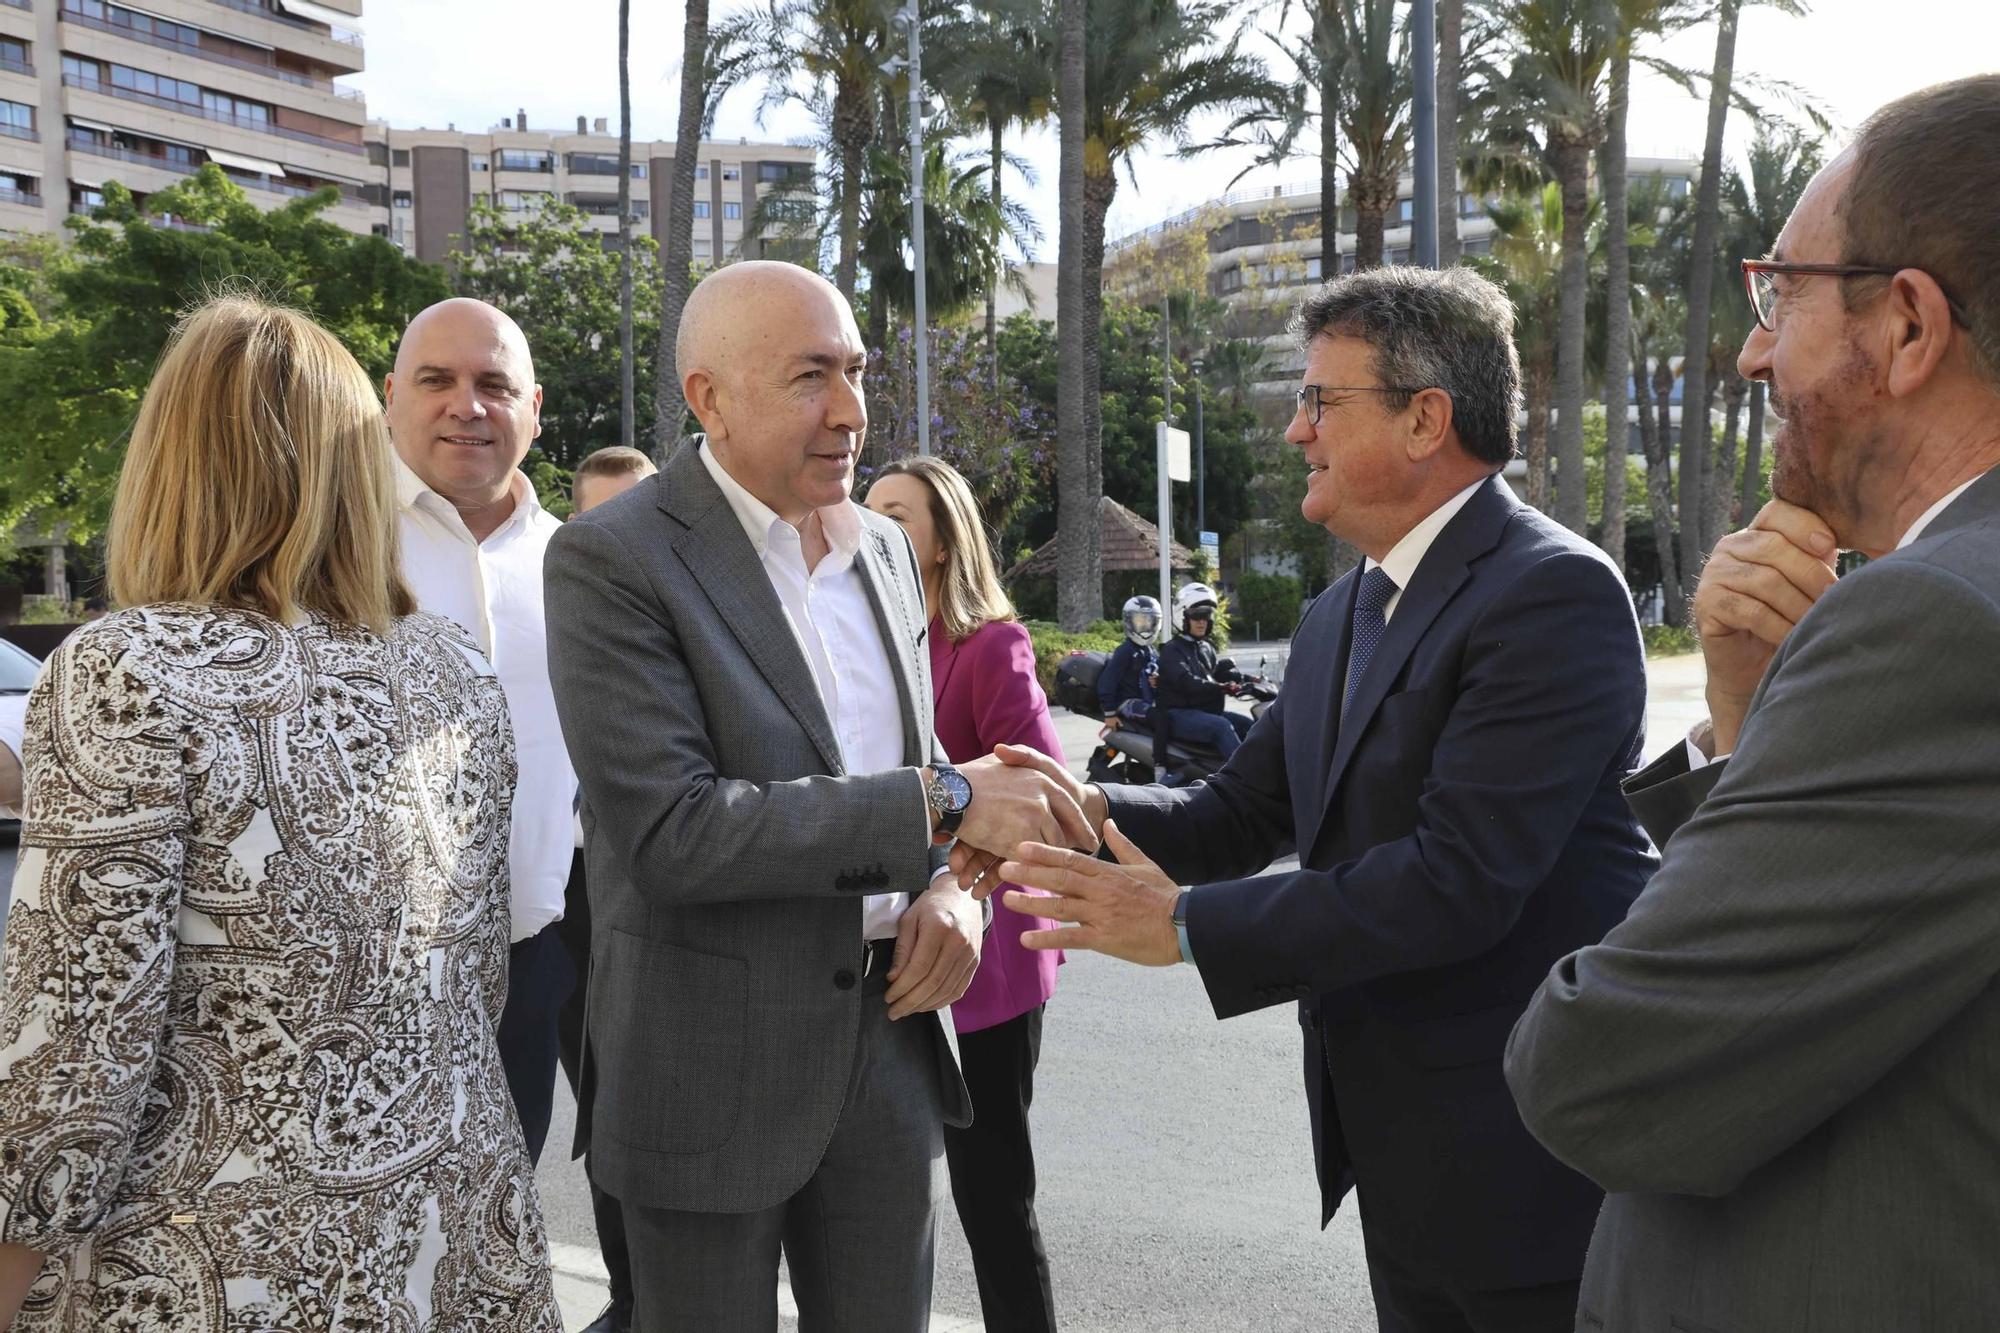 El ministro de Transportes y Movilidad Sostenible, Óscar Puente, participa en el Foro Alicante de INFORMACIÓN